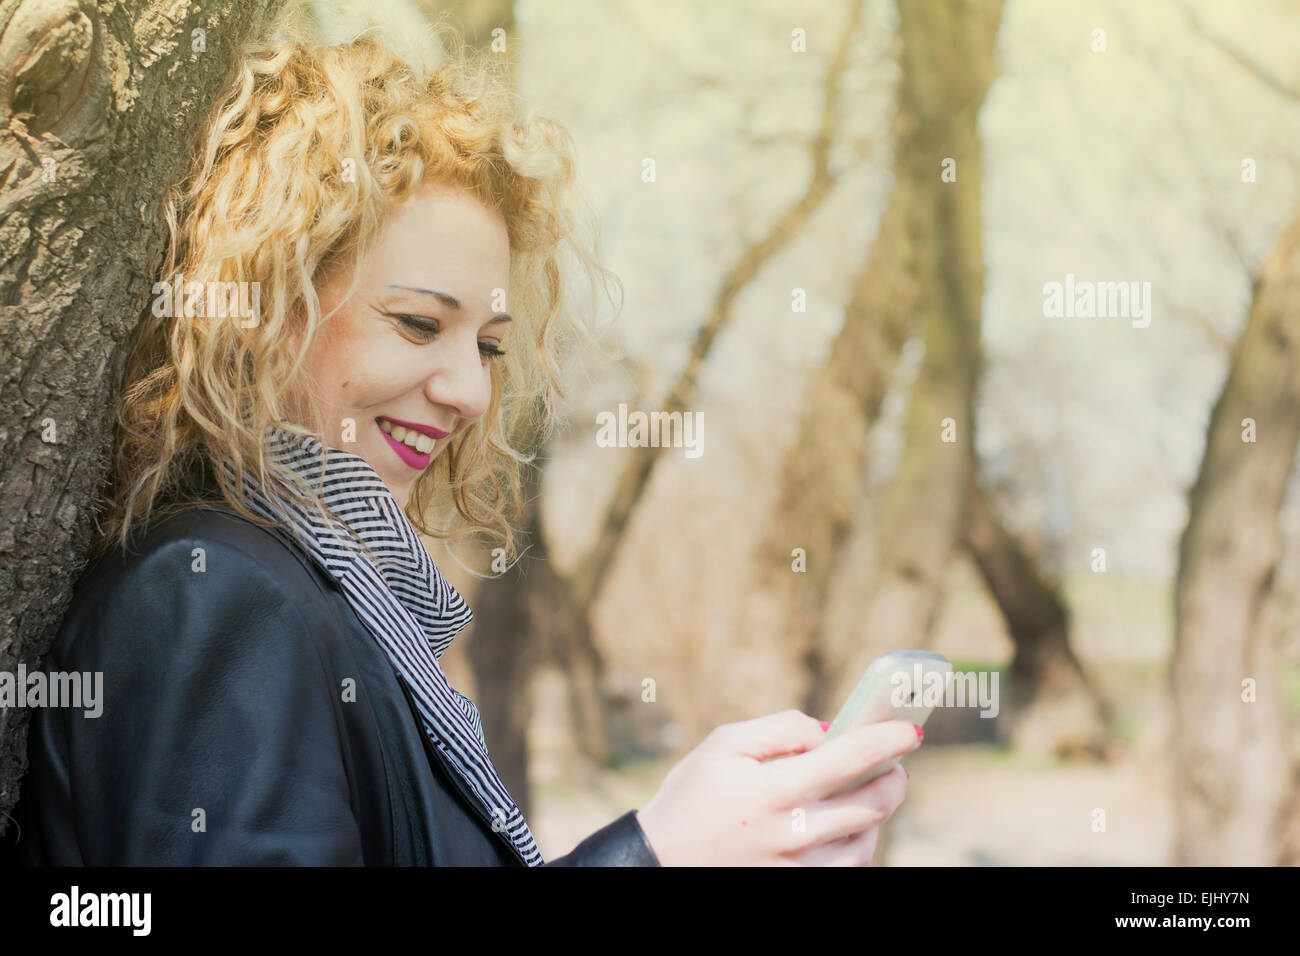 Hübsche junge Frau mit blonden lockigen Haaren auf einen Baum und tippen auf dem Handy. Sie lächelt wie sie mit ihr kommuniziert Stockfoto